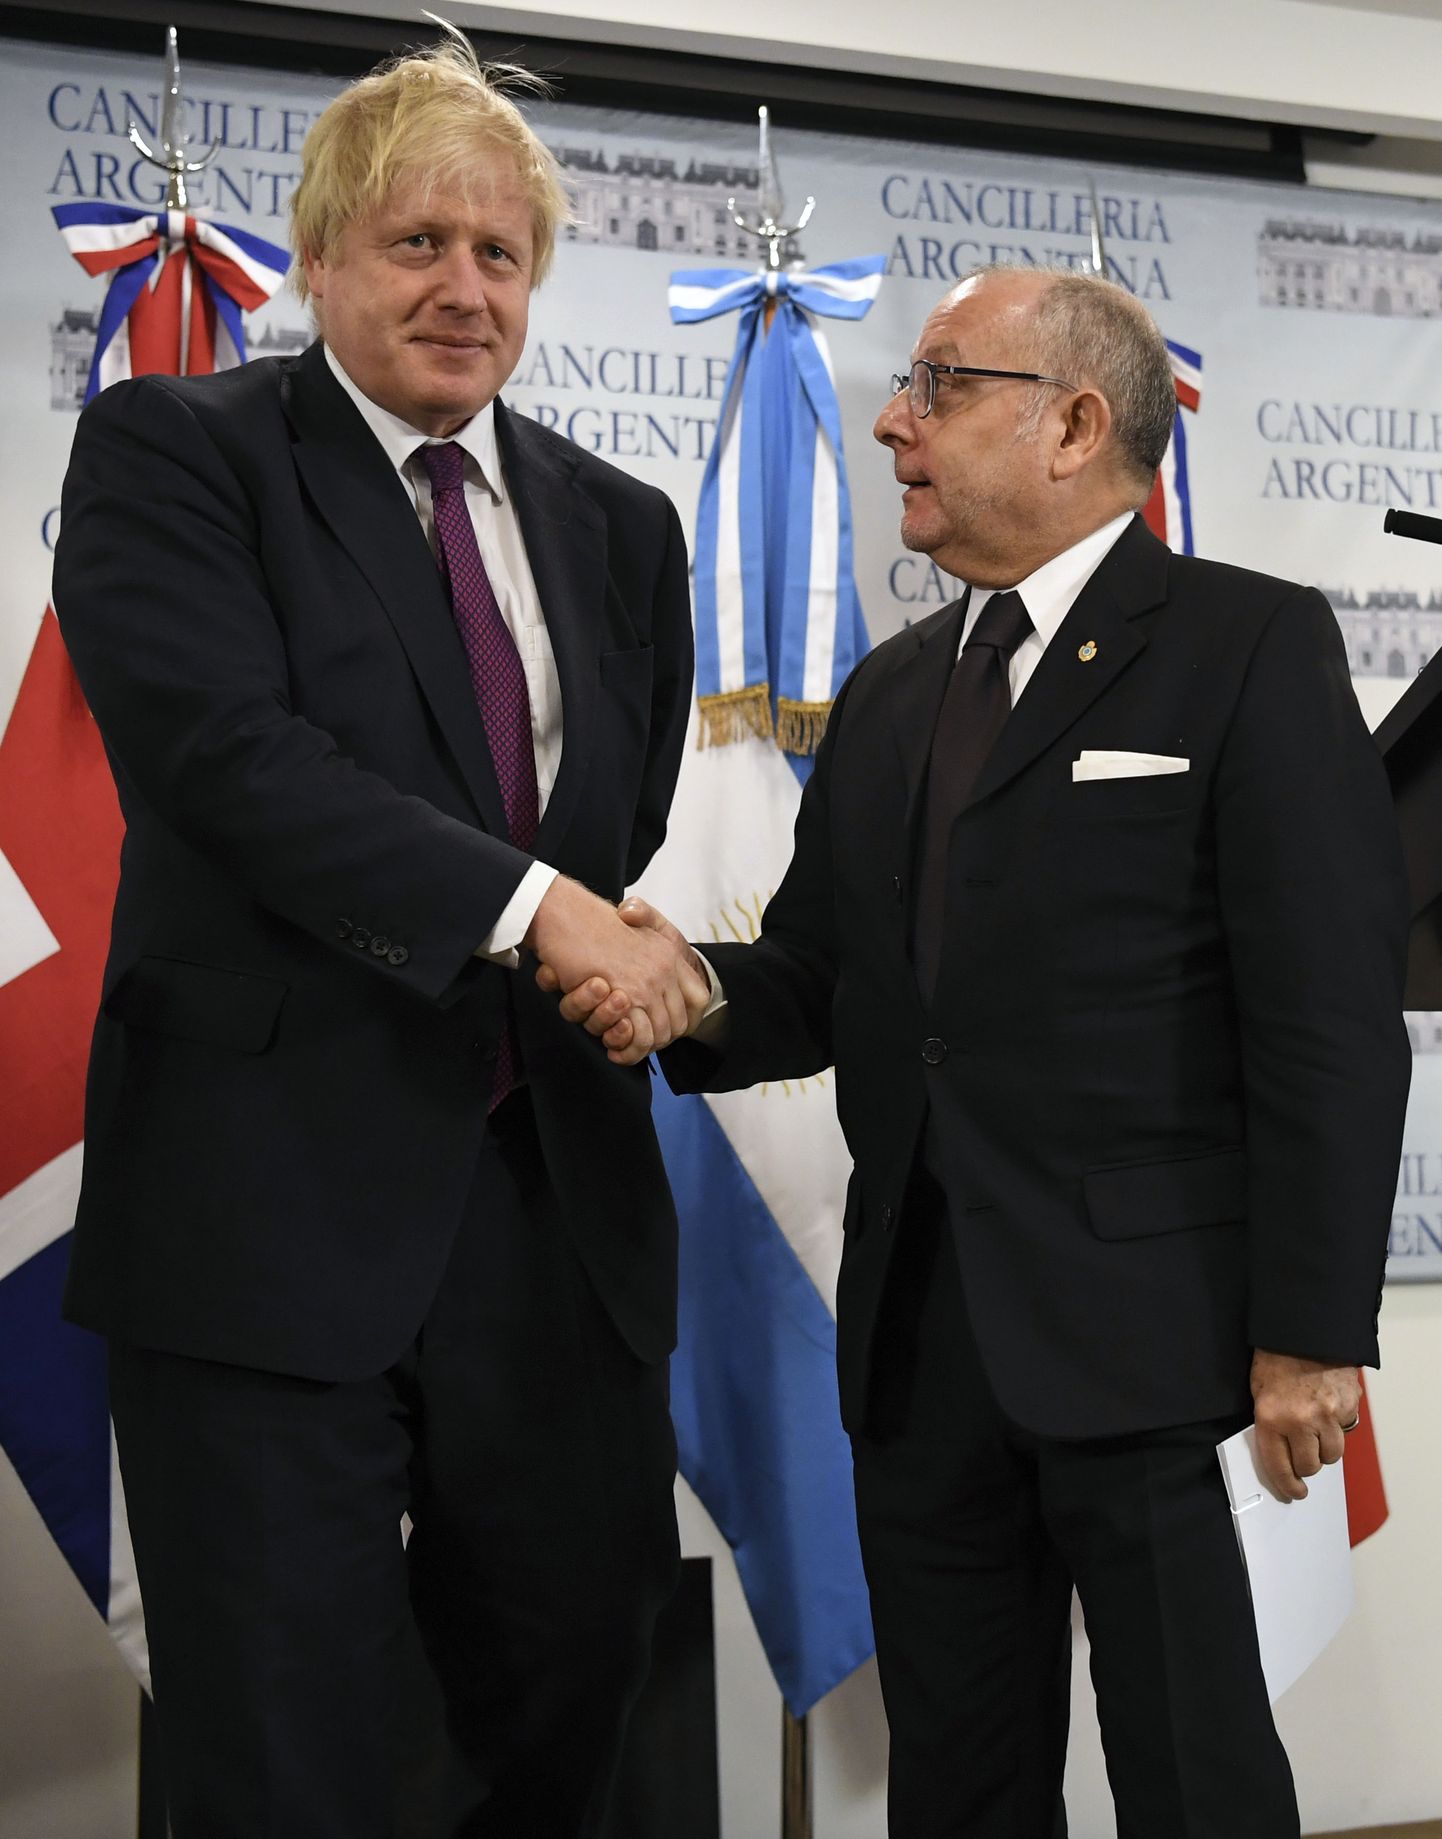 Briti välisminister Boris Johnson ja Argentina välisminister Jorge Faurie teisipäeval Buenos Aireses.